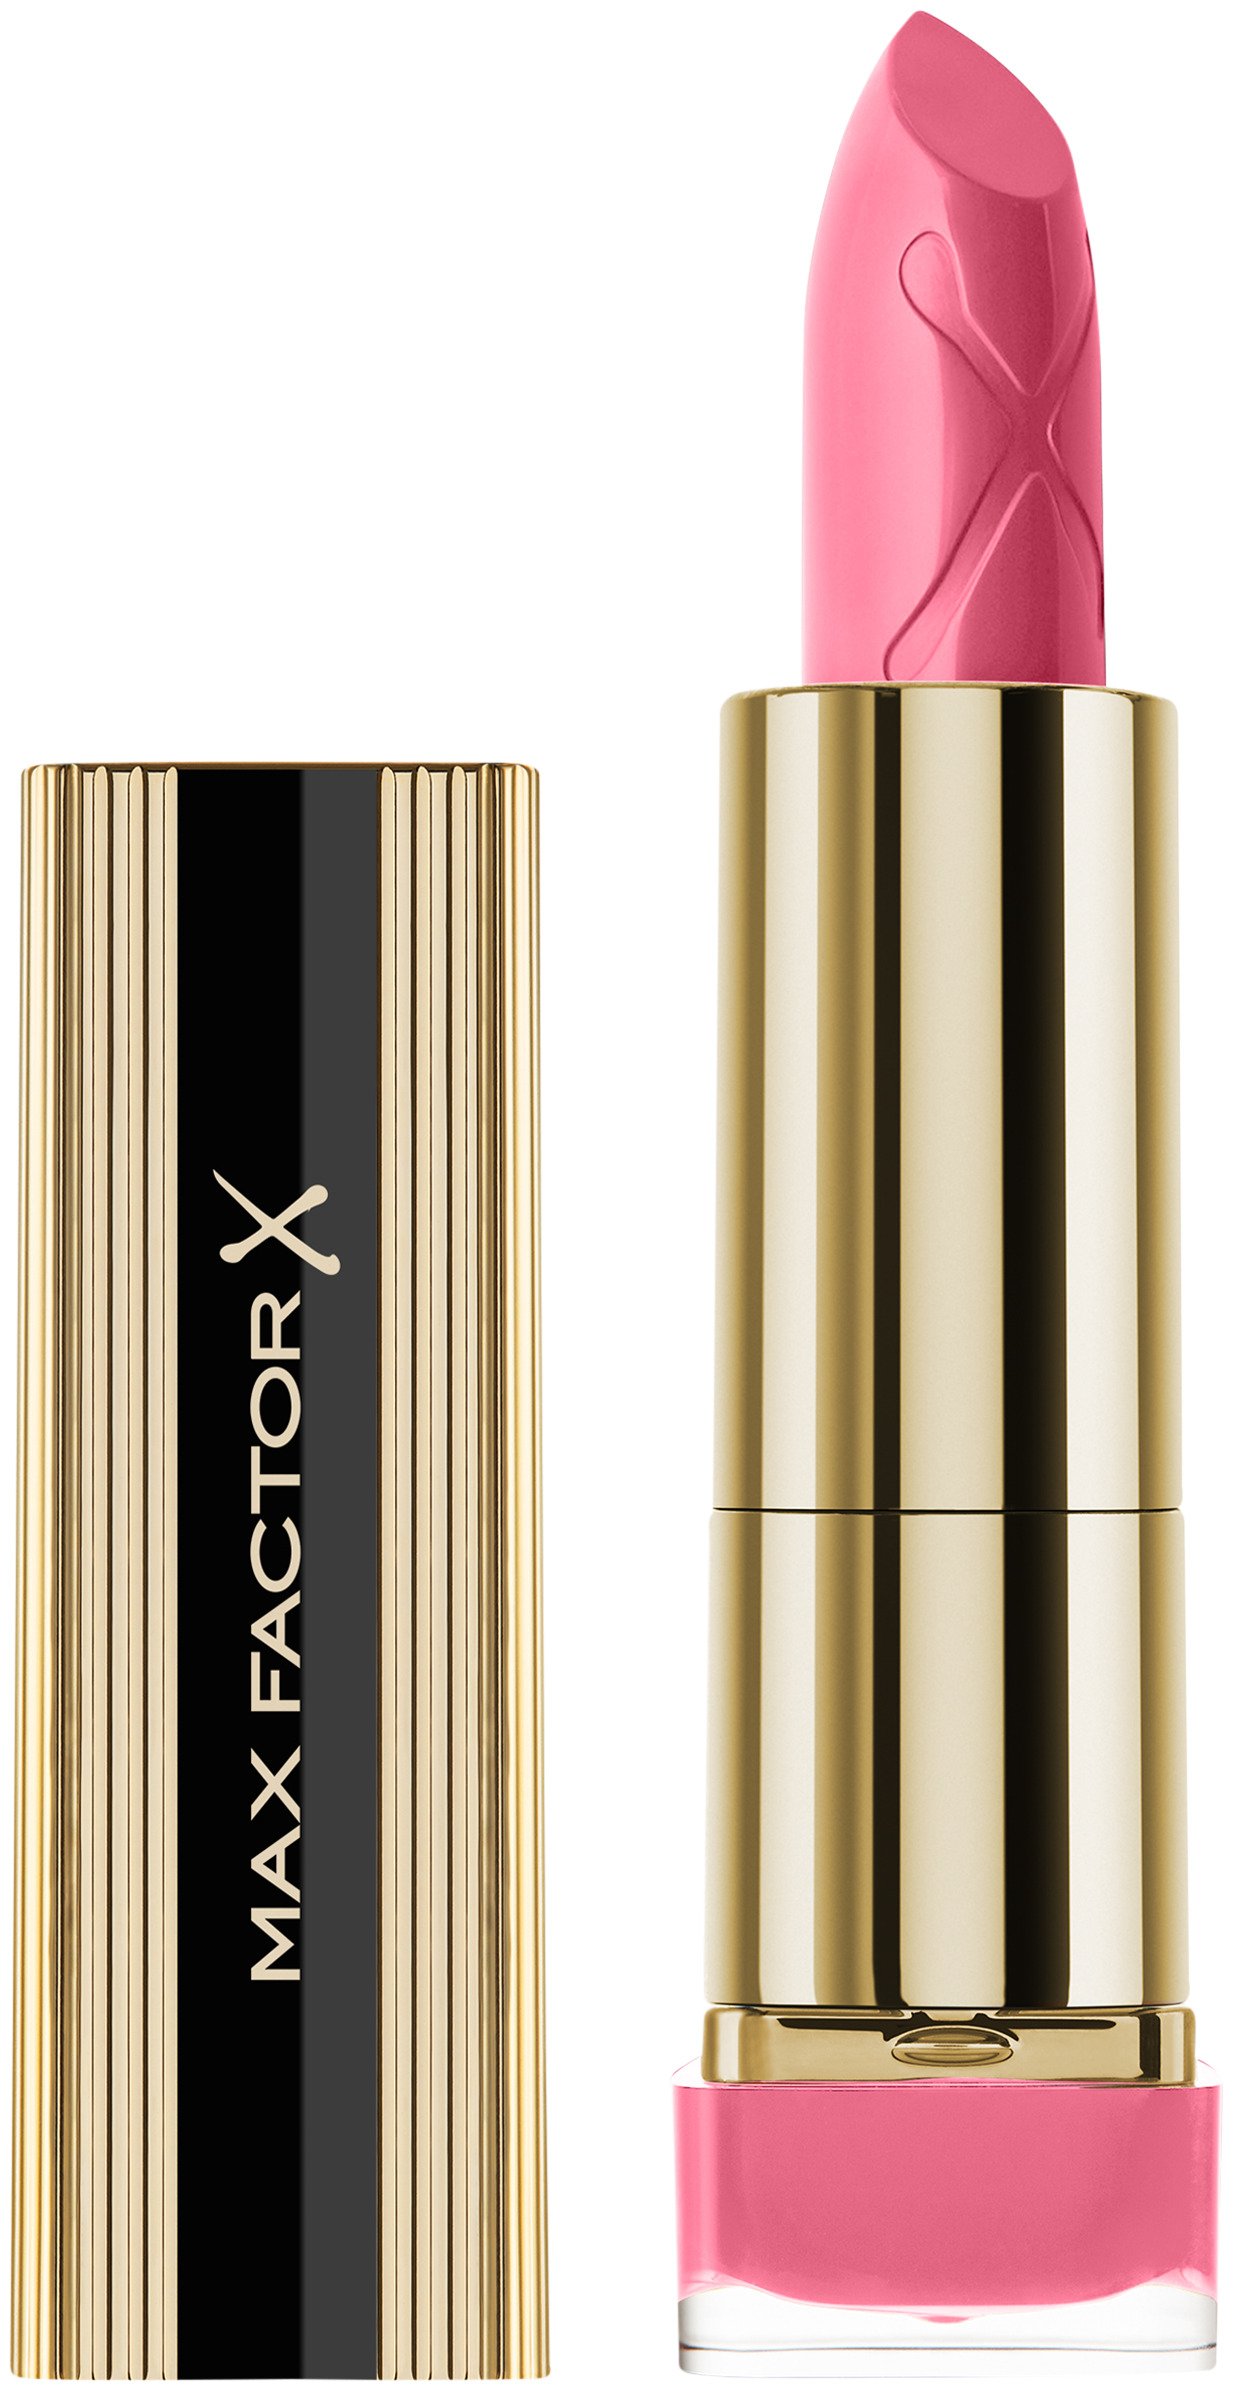 Max Factor Colour Elixir Lipstick XS 090 English Rose 4g